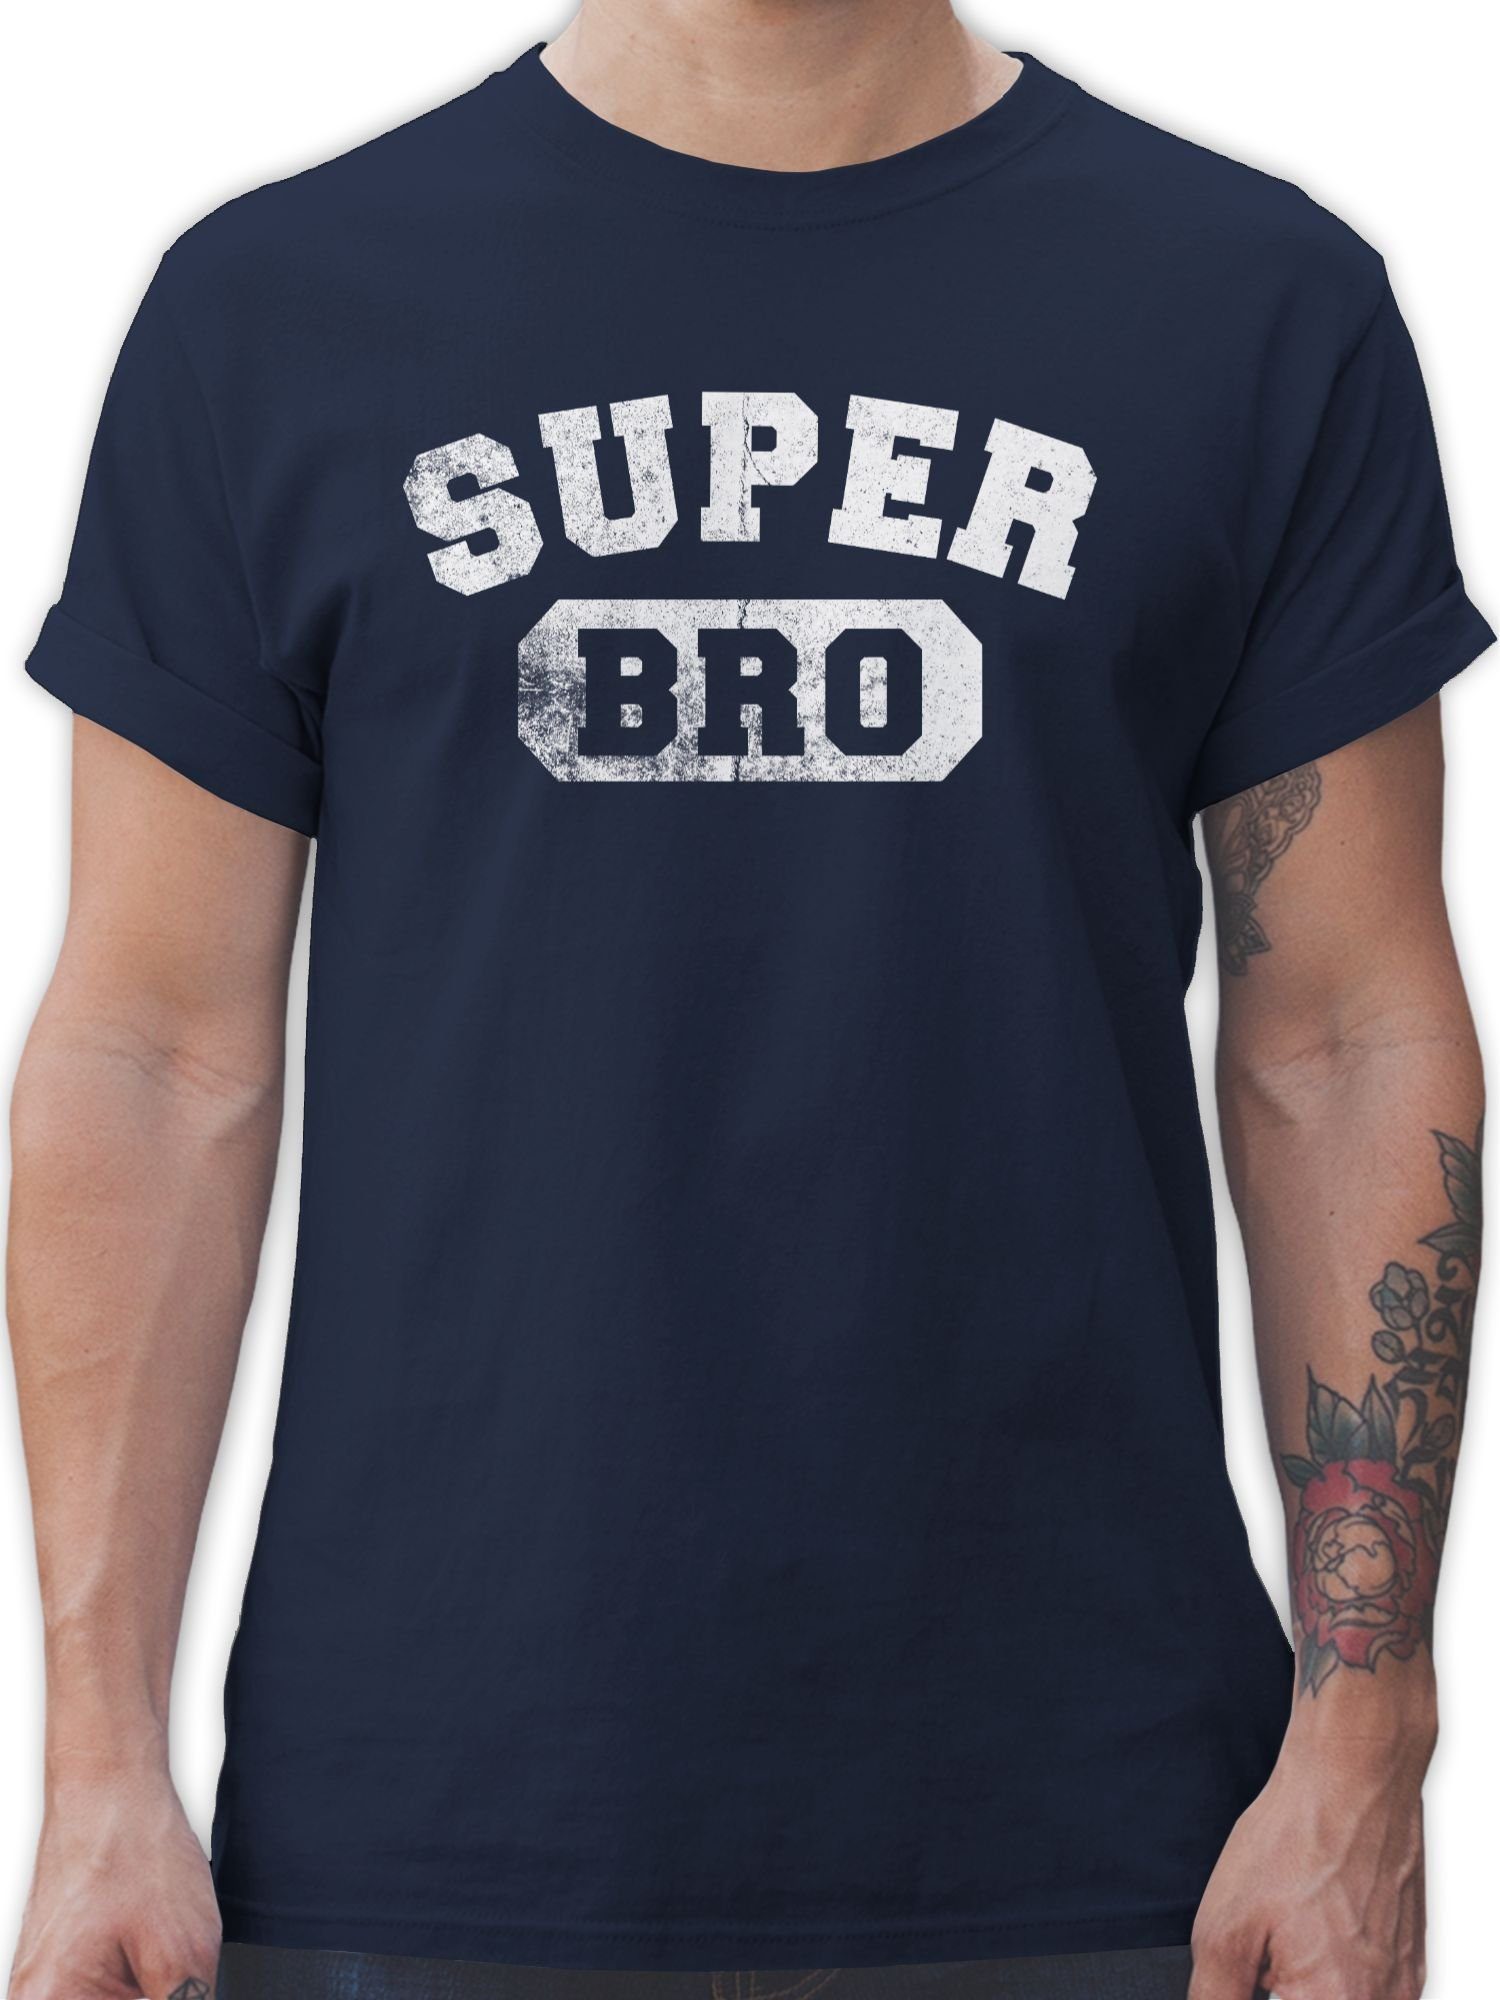 T-Shirt Bruder Geschenkidee Shirtracer Navy Super 02 Bruder Geschenk Blau Bro Brother Weihnachten